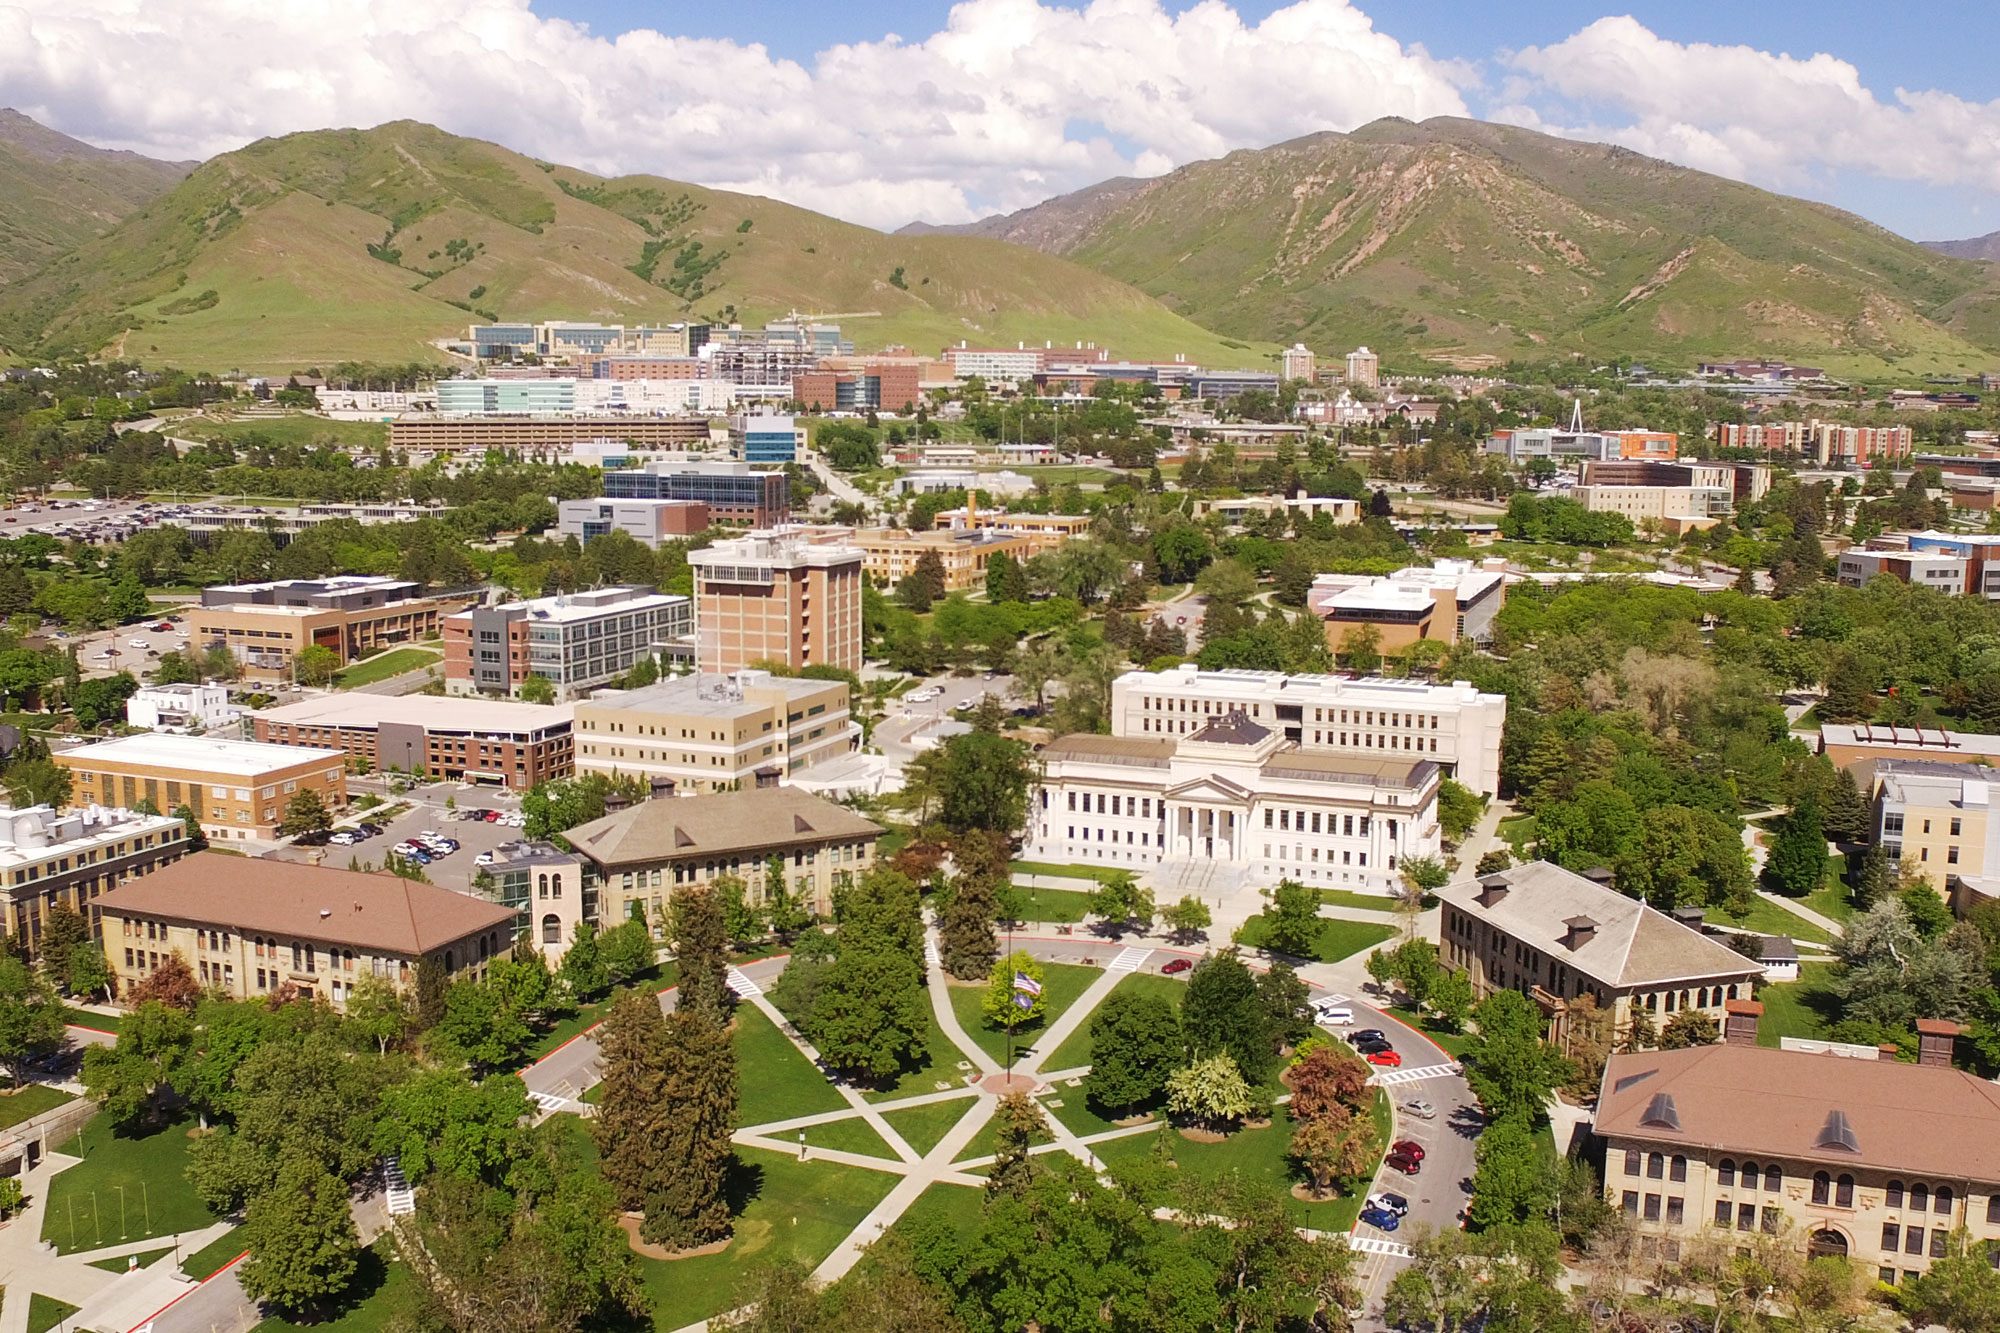 University of Utah - Trường đại học có nhiều xếp hạng học thuật danh giá tại Hoa Kỳ